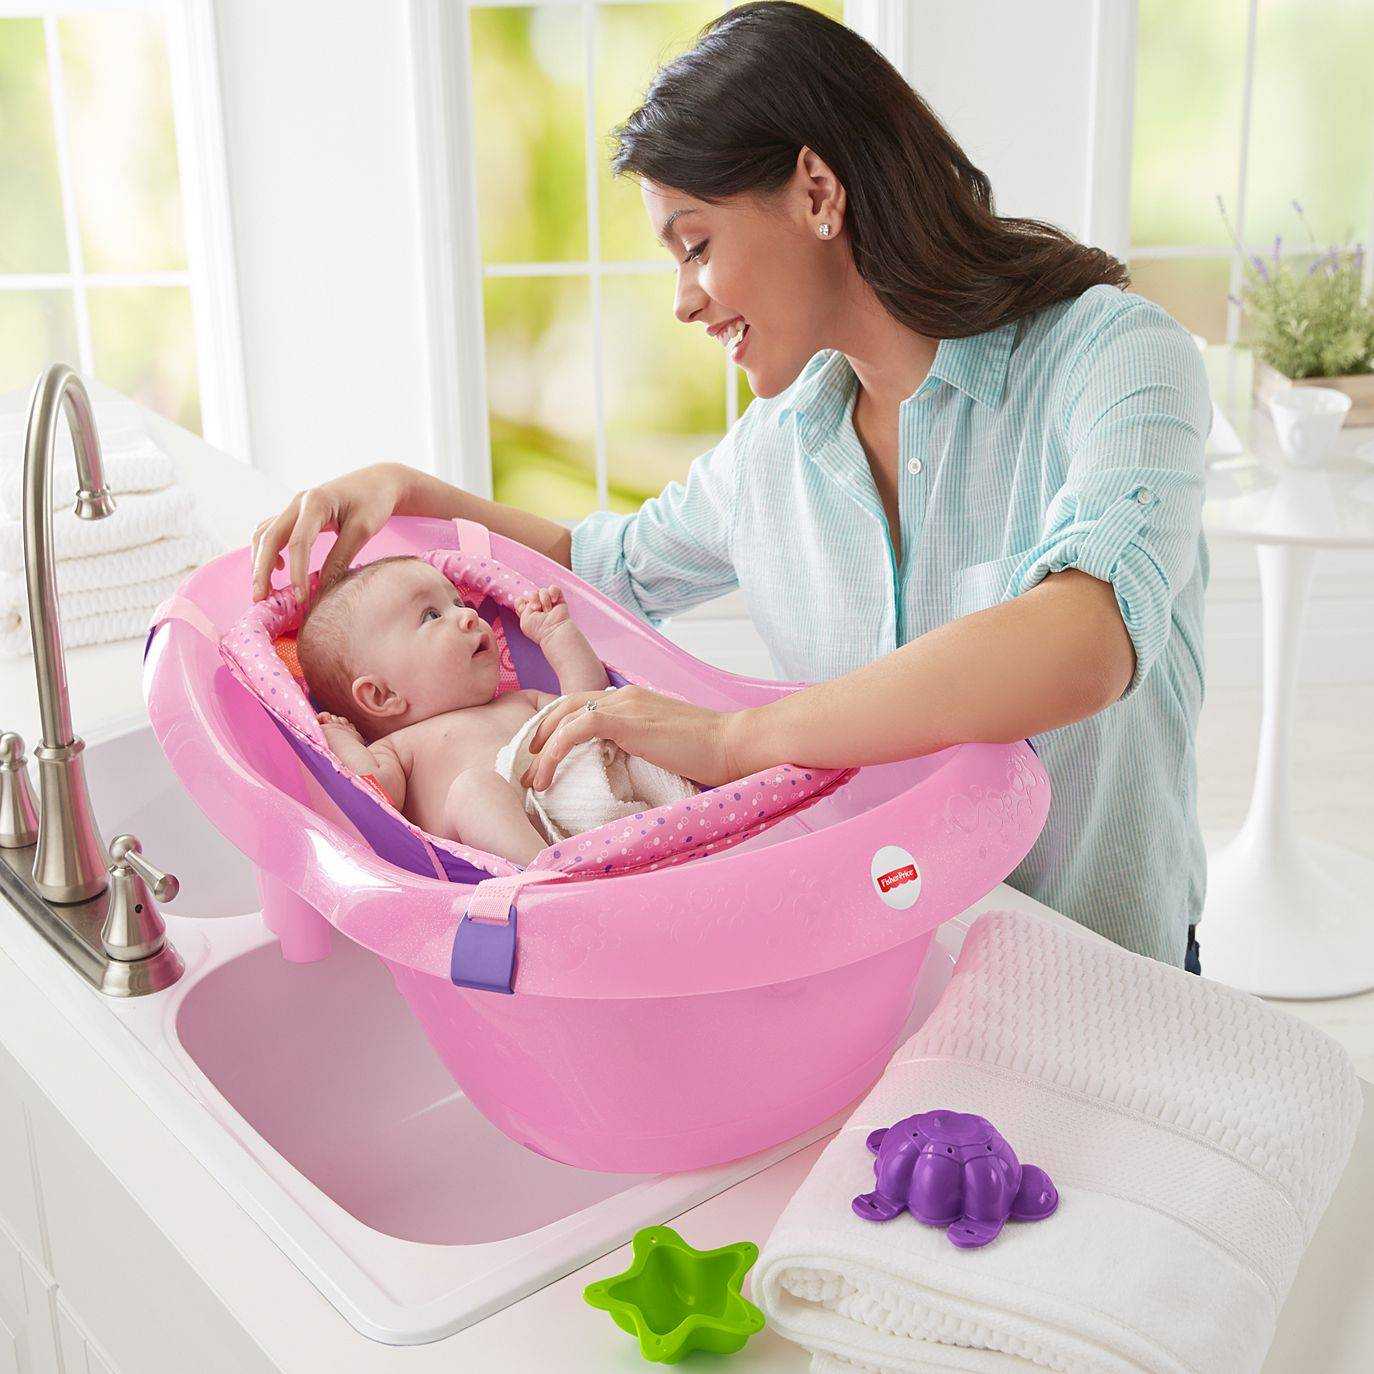 10 лучших средств для мытья головы и тела новорожденных - и детей чуть старше